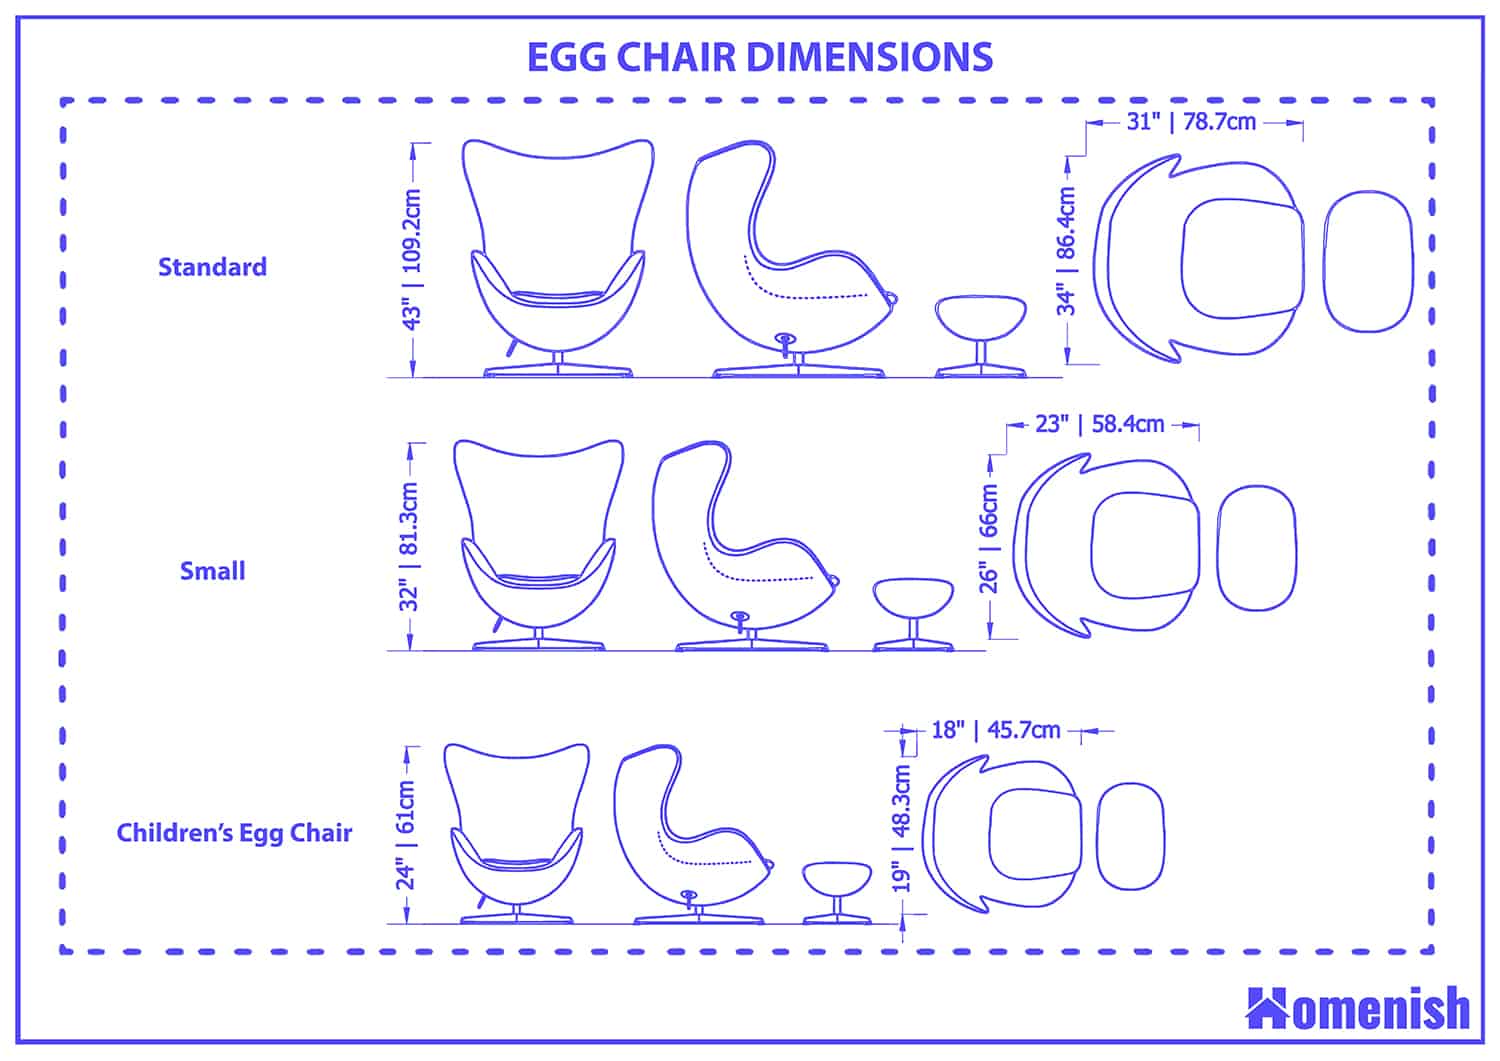 Egg chair dimensions